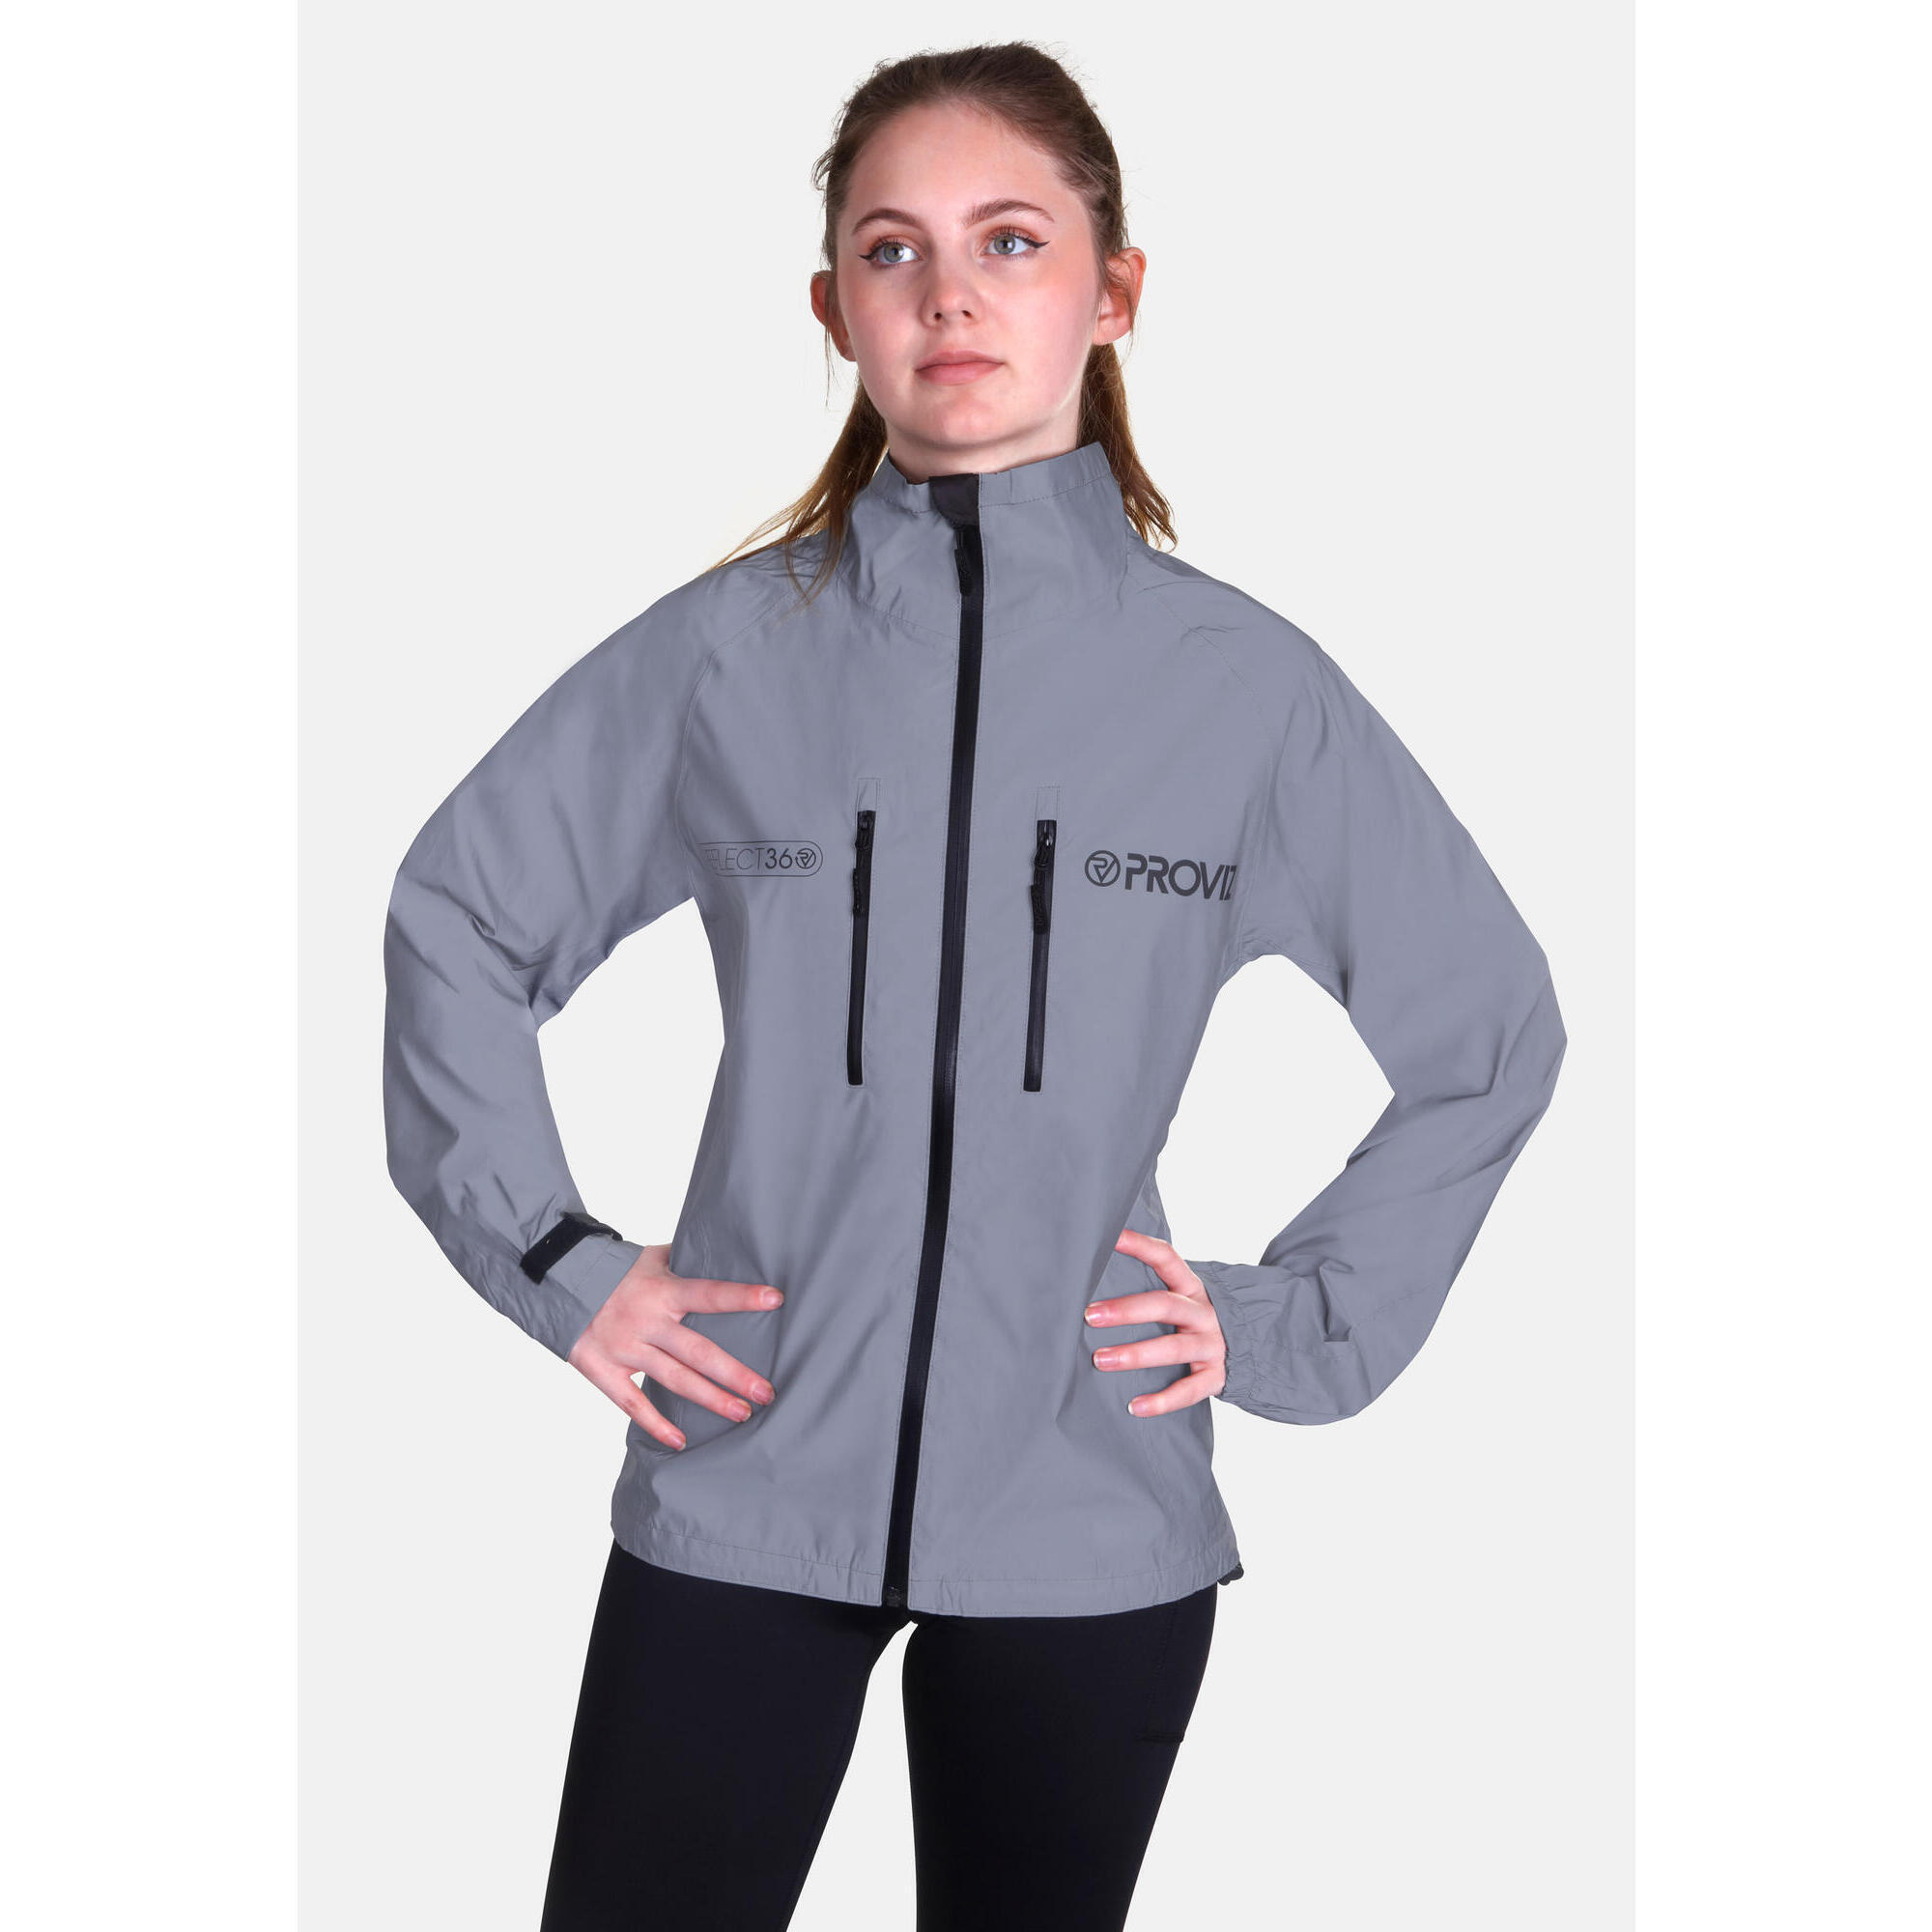 Proviz Women's REFLECT360 Waterproof Reflective Cycling Jacket PROVIZ